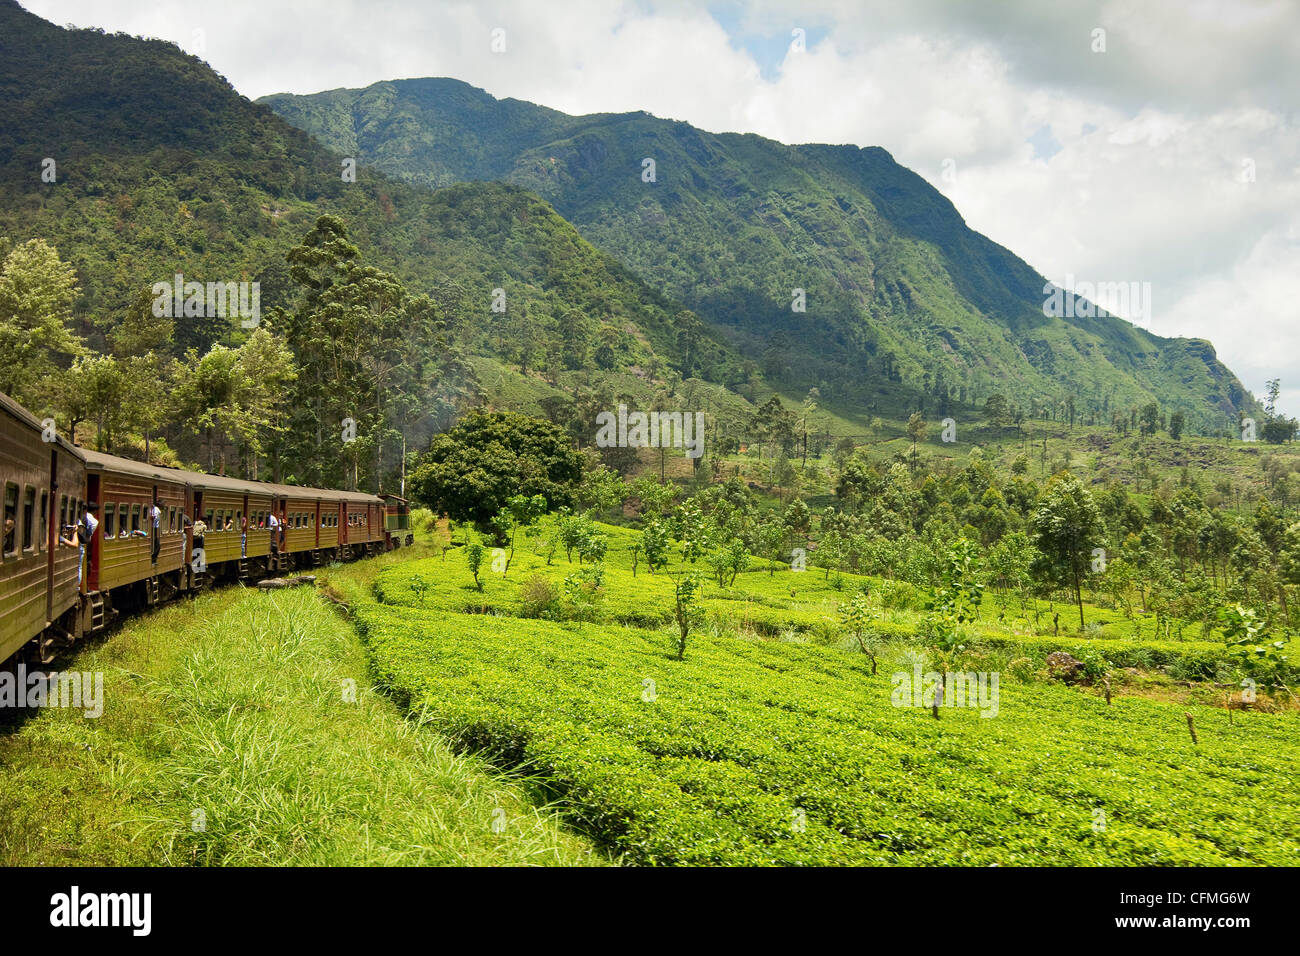 Le trajet en train panoramique à travers les hautes terres centrales, avec ses montagnes et plantations de thé, près de Nuwara Eliya, Sri Lanka, Asie Banque D'Images